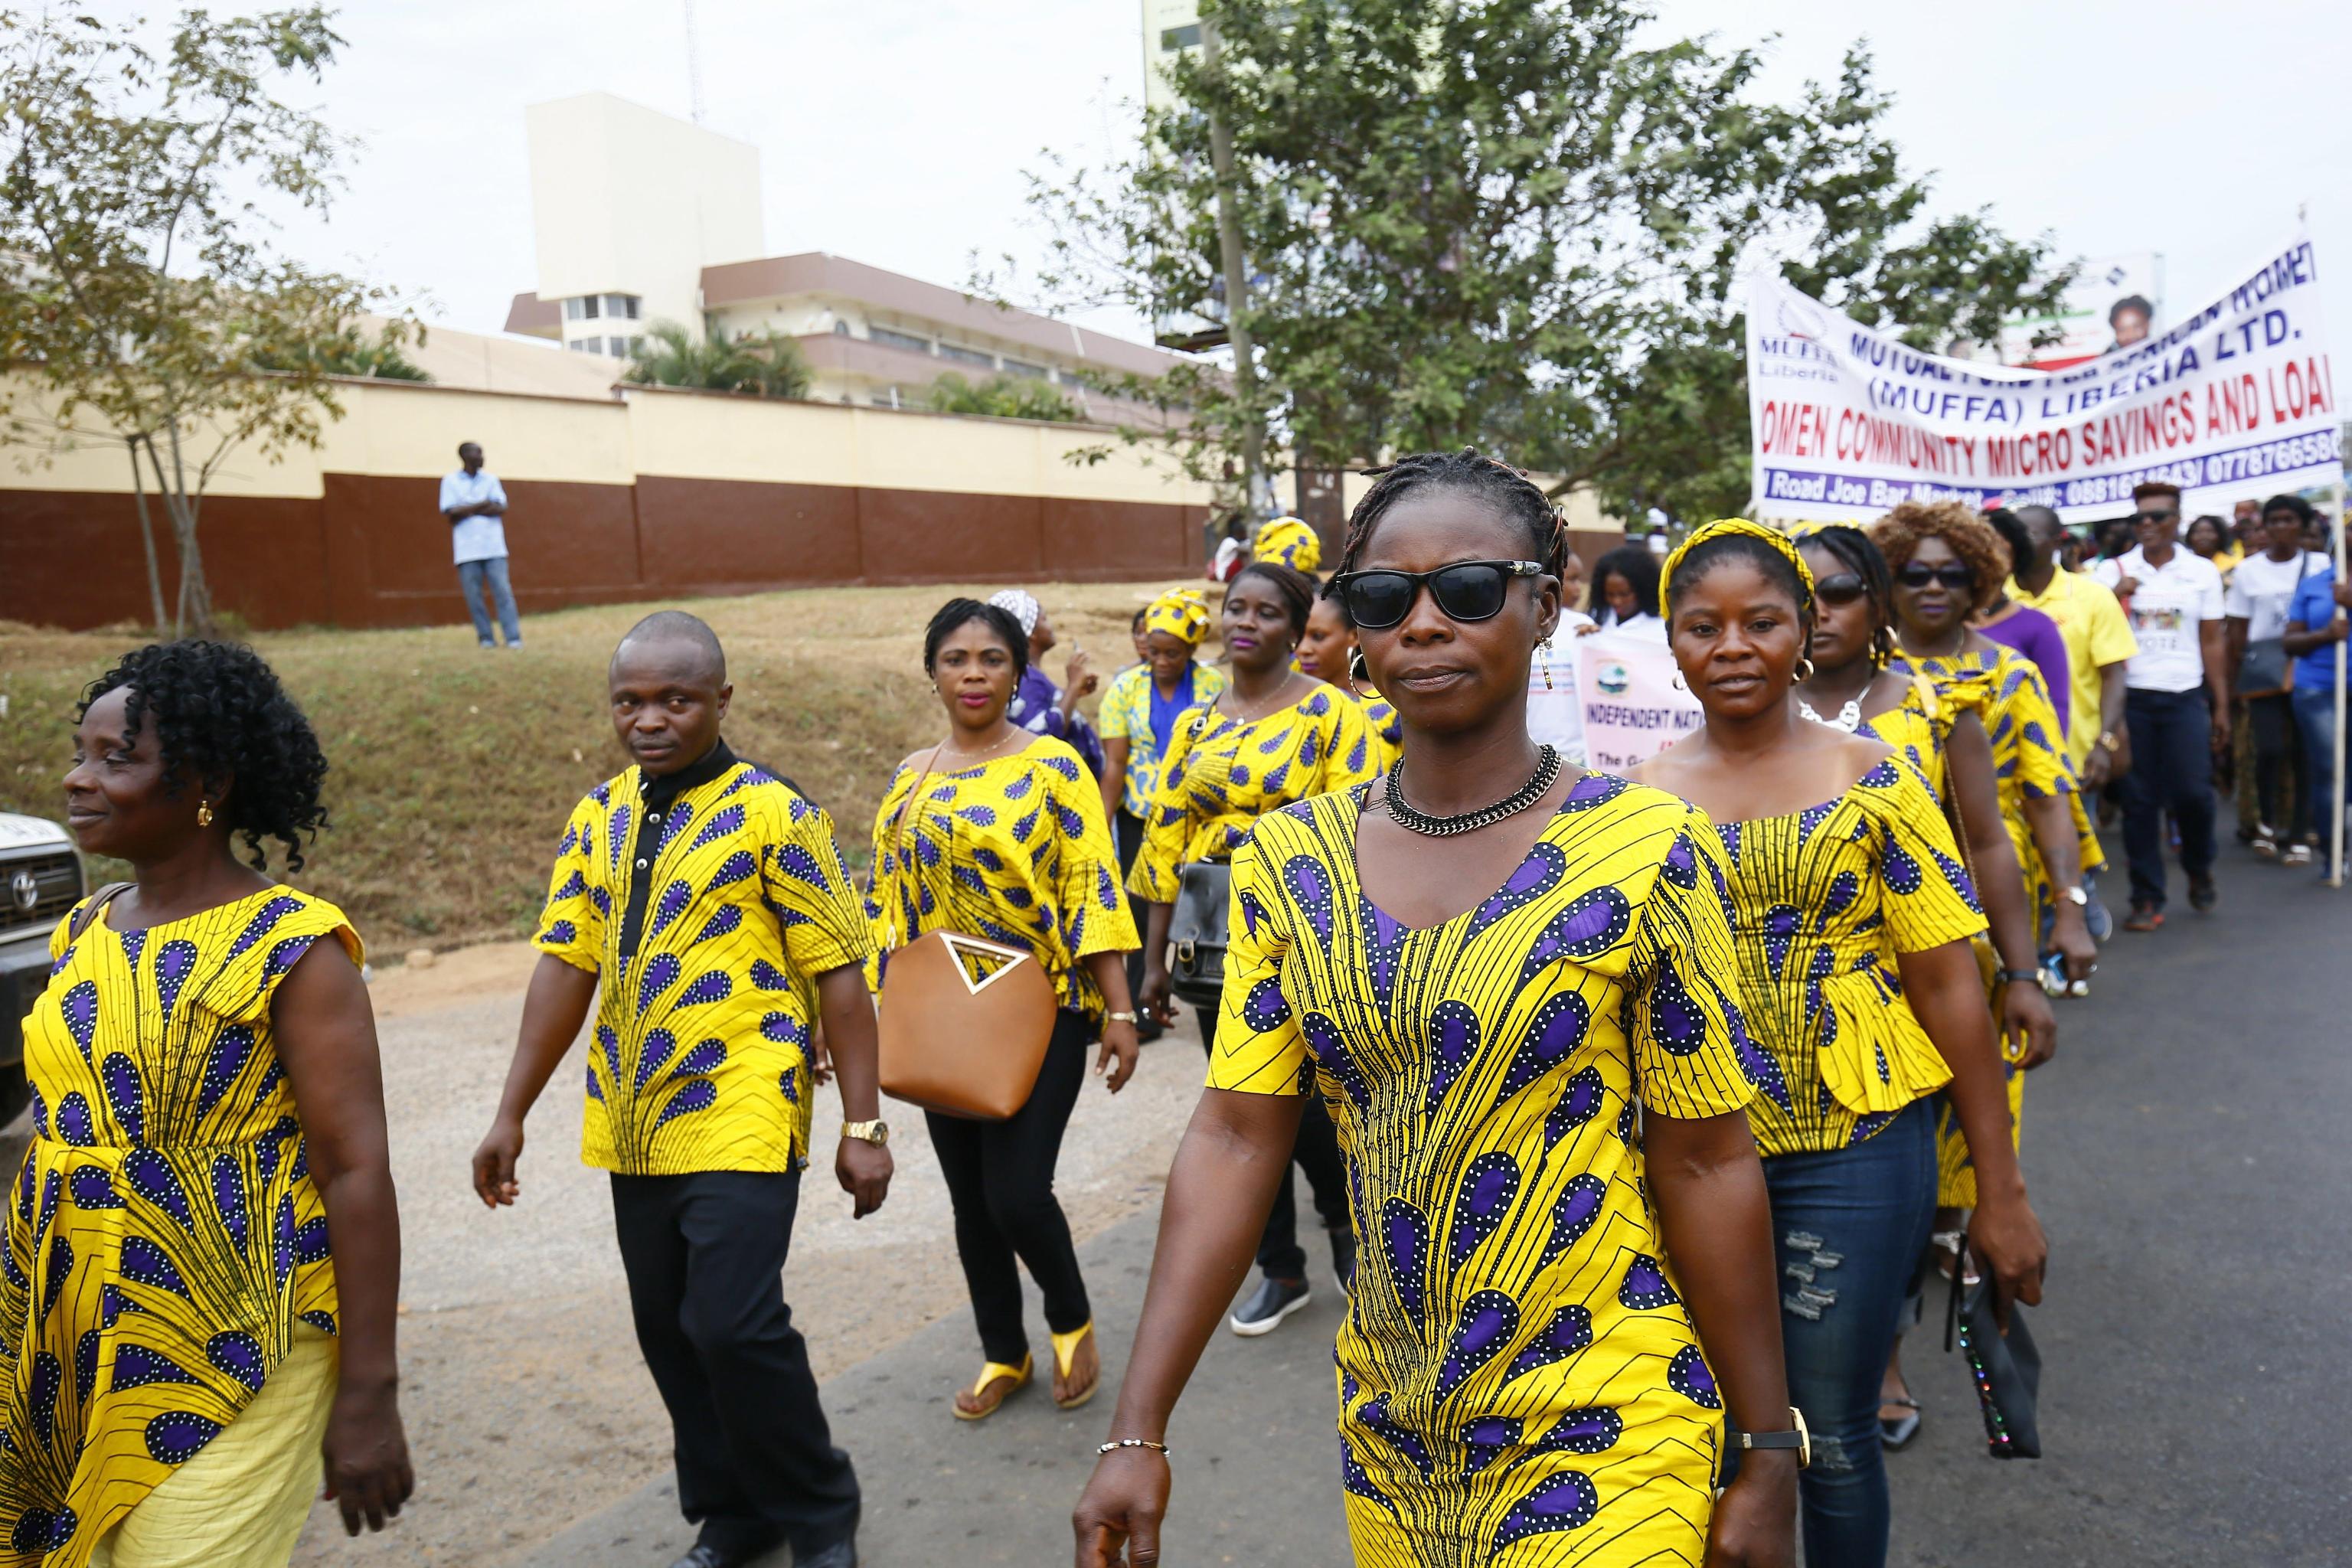 Coloratissima parata quella che si è svolta per le vie di Monrovia, in Liberia